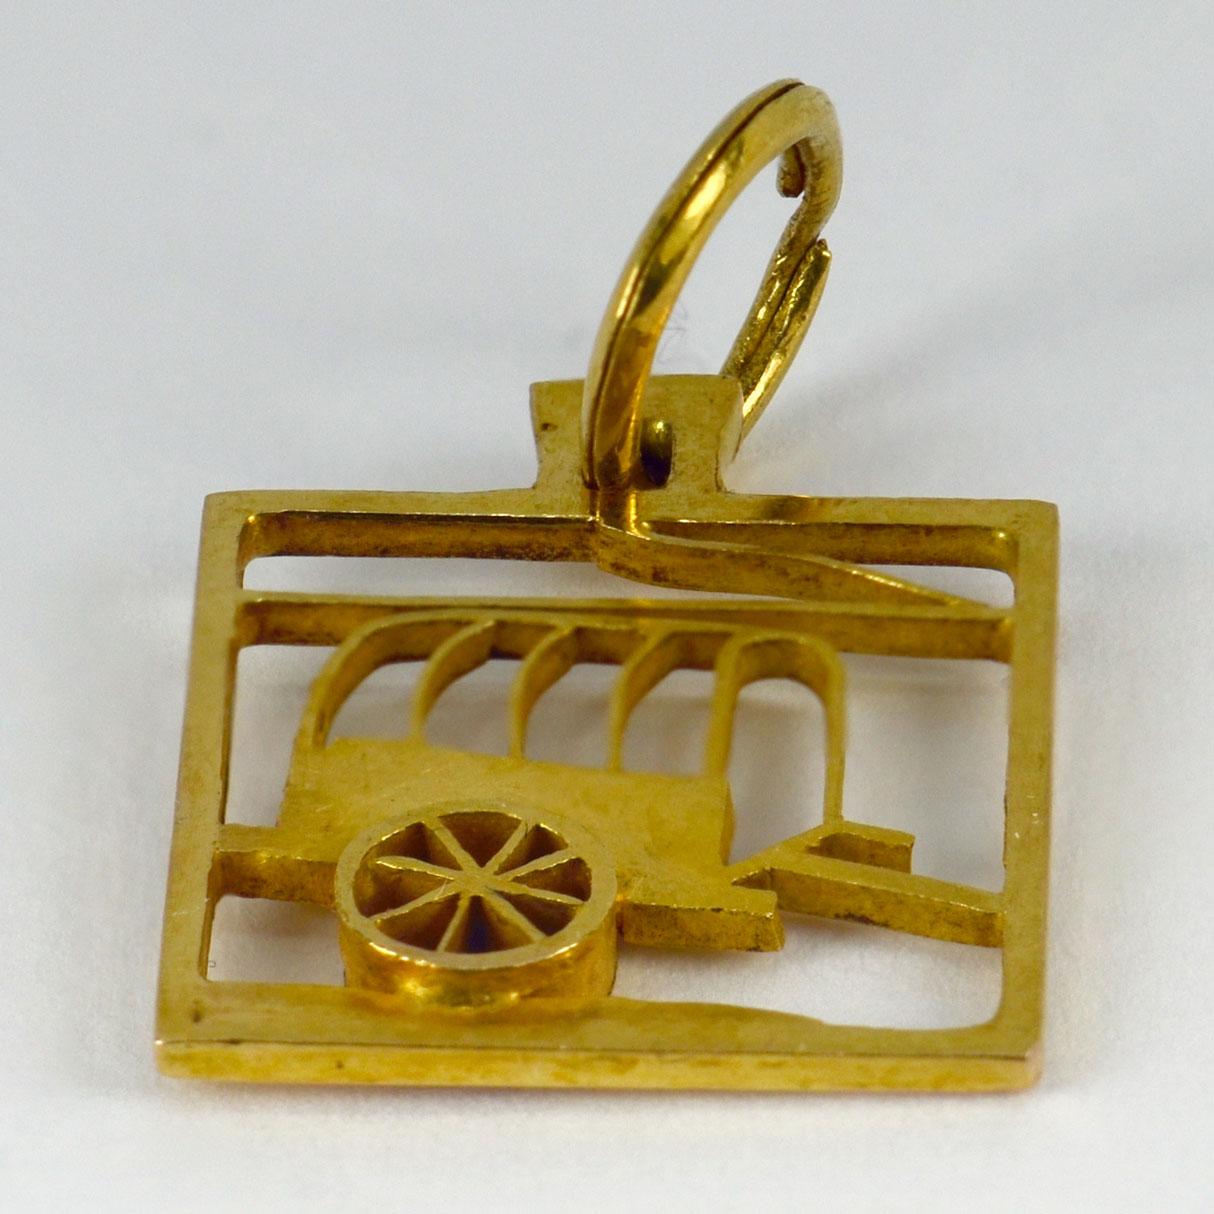 Un 18 carats (18K)  pendentif en or jaune carré conçu comme un wagon. Non marqué mais testé comme étant de l'or 18 carats au moins.

Dimensions : 1.9 x 1,5 x 0,2 cm (sans l'anneau)
Poids : 1,85 grammes
